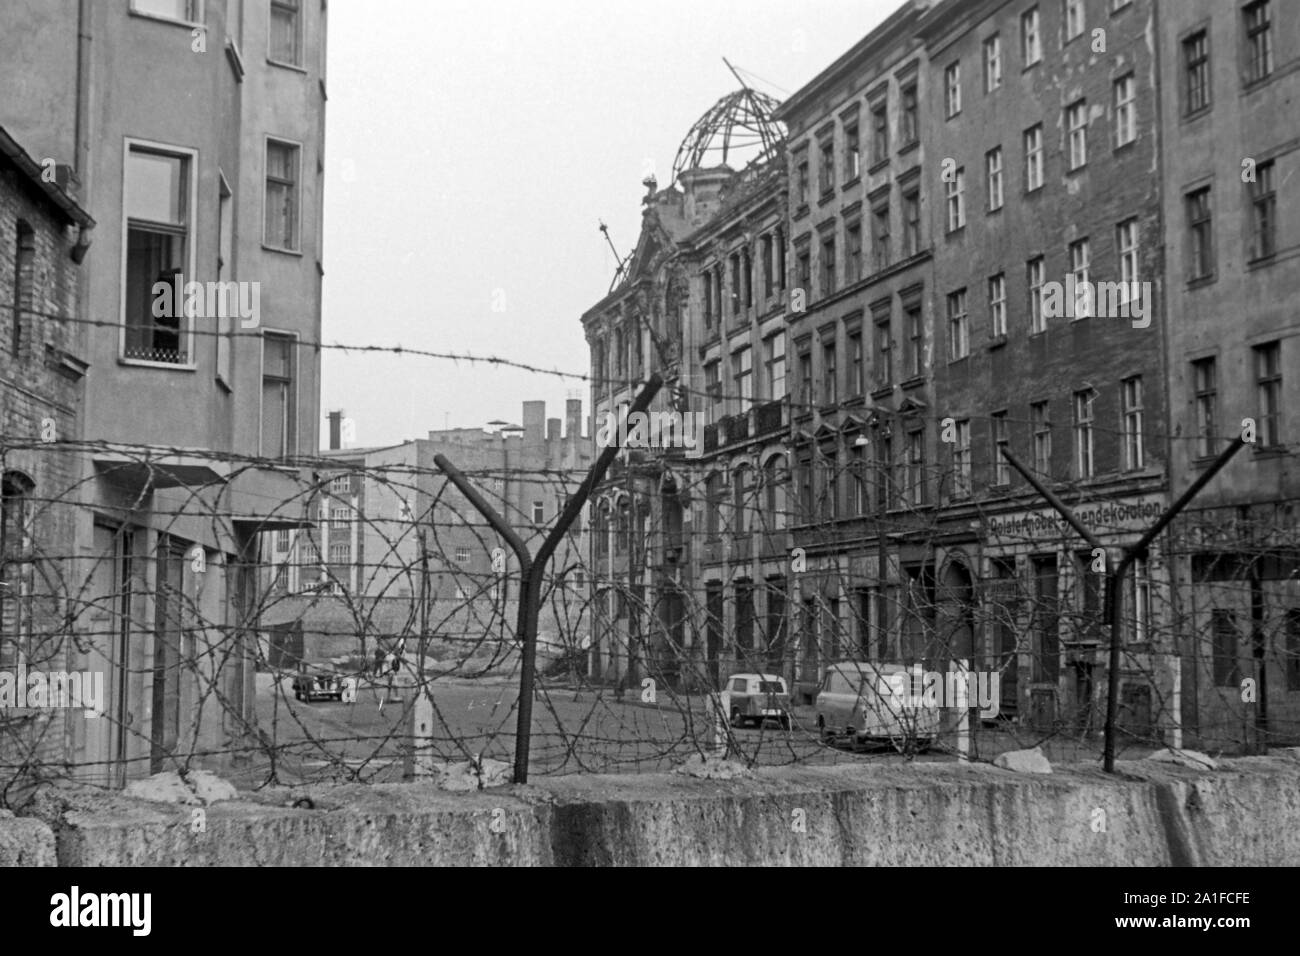 Zugemauerte Fenster in Häusern auf der Ostseite der Mauer in Berlin, Deutschland 1962.  Walled windows in houses on the East side of the wall in Berlin, Germany 1962. Stock Photo